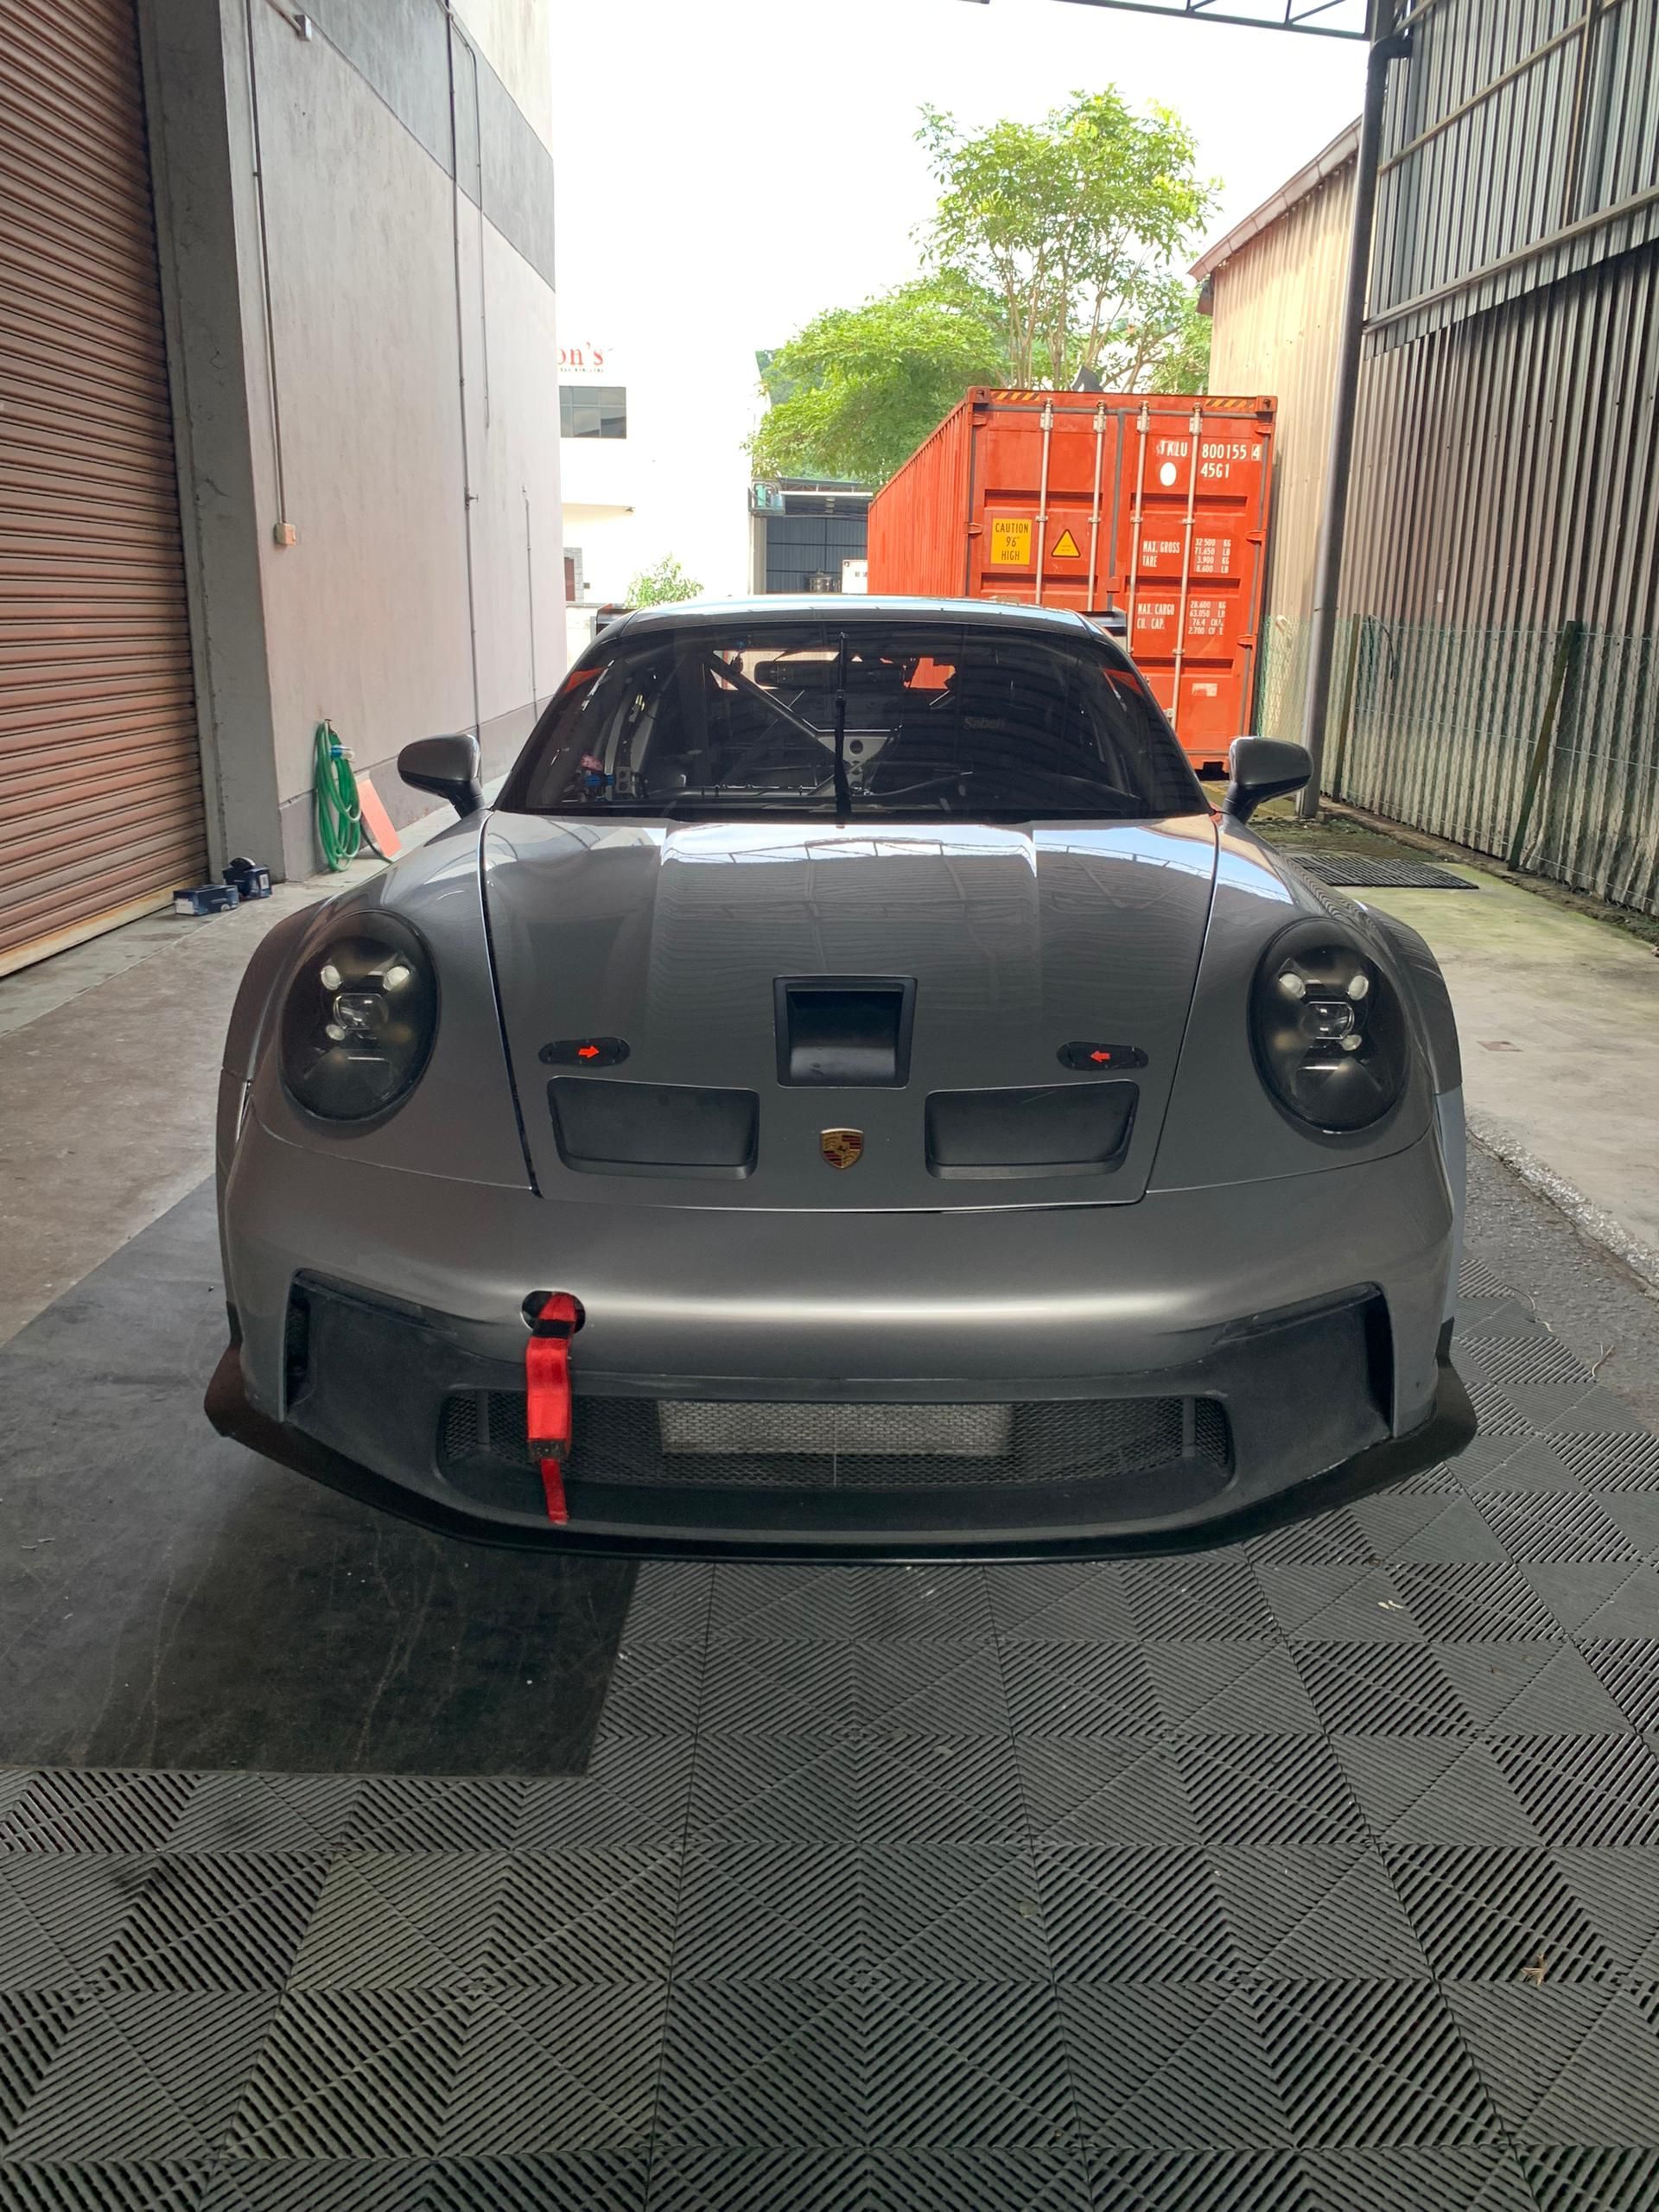 2021 포르쉐 911 GT3 컵 (992)-56.9시간+3.7시간기어박스